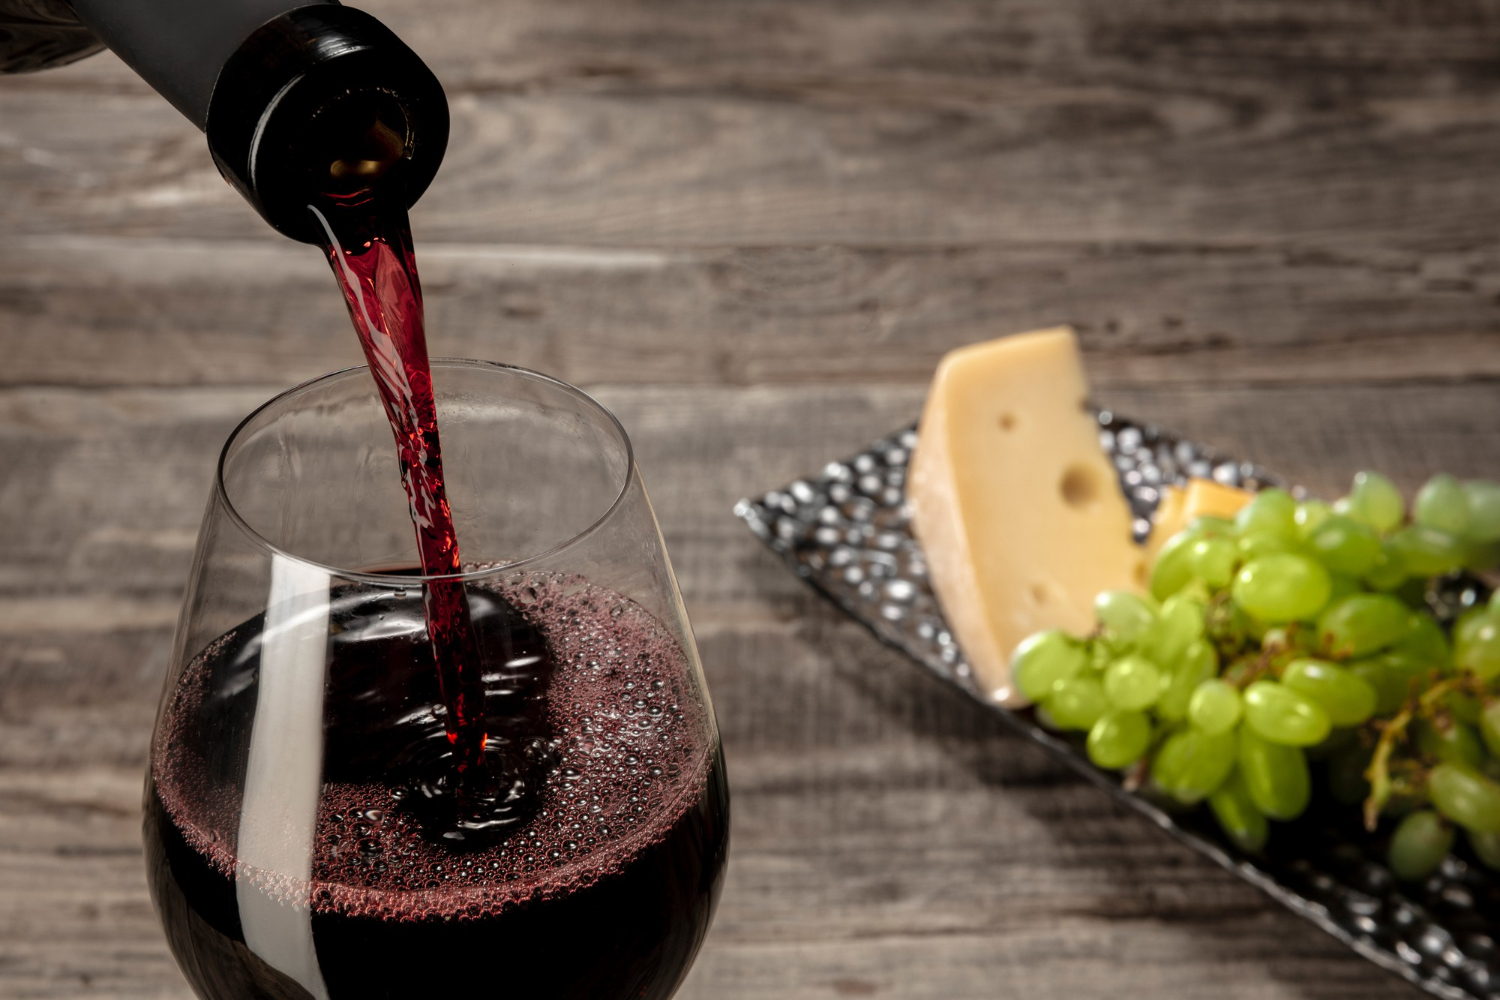 Estos son los principales tipos de copas para degustar vinos